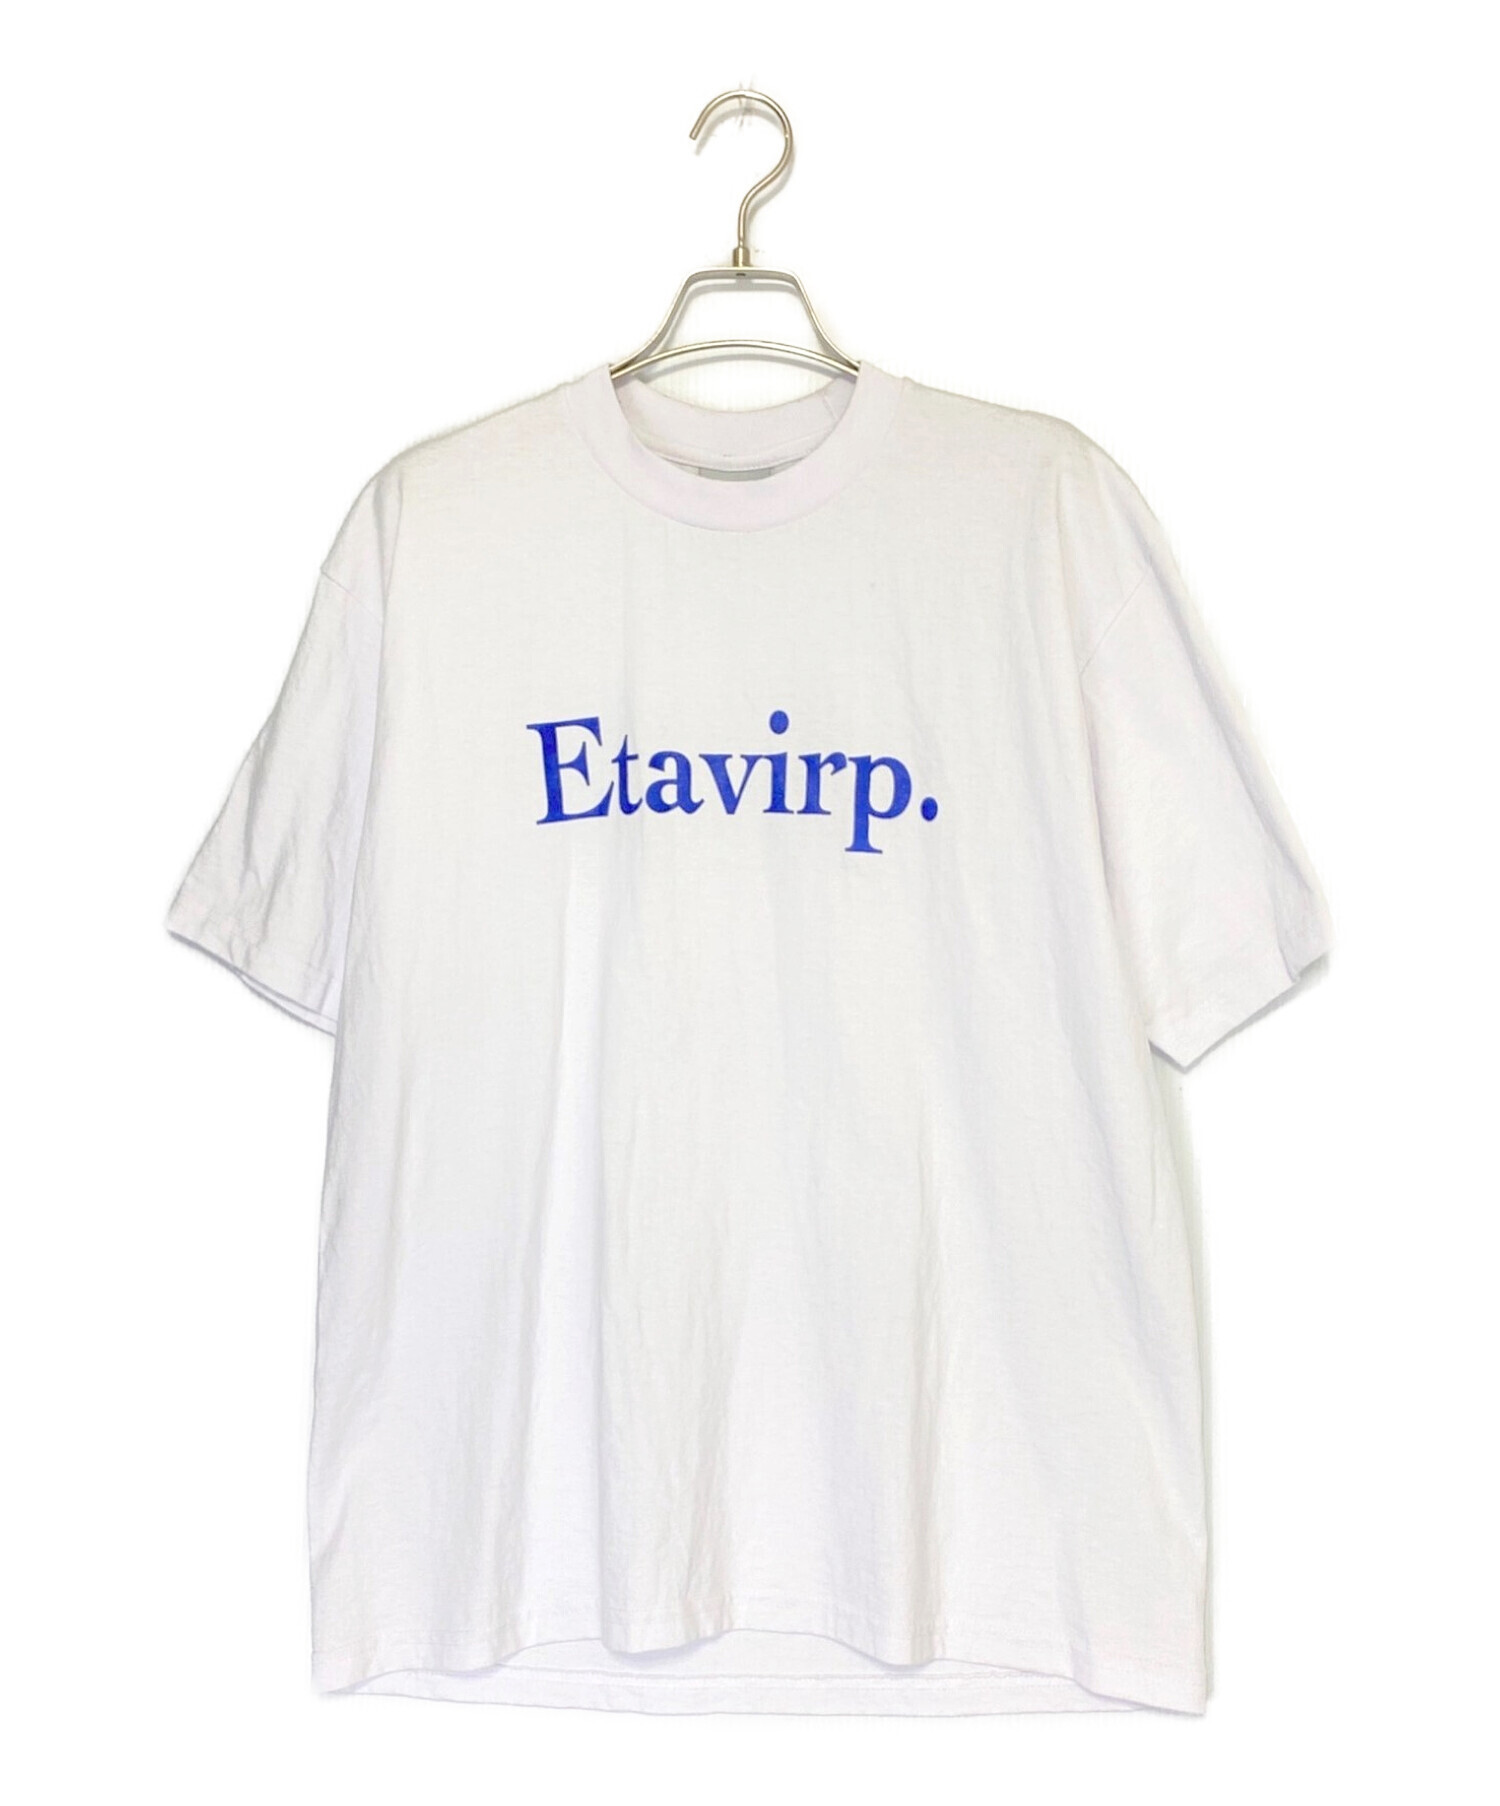 エタヴァープ リバース刺繡ロゴ ロングスリーブTシャツ ホワイト